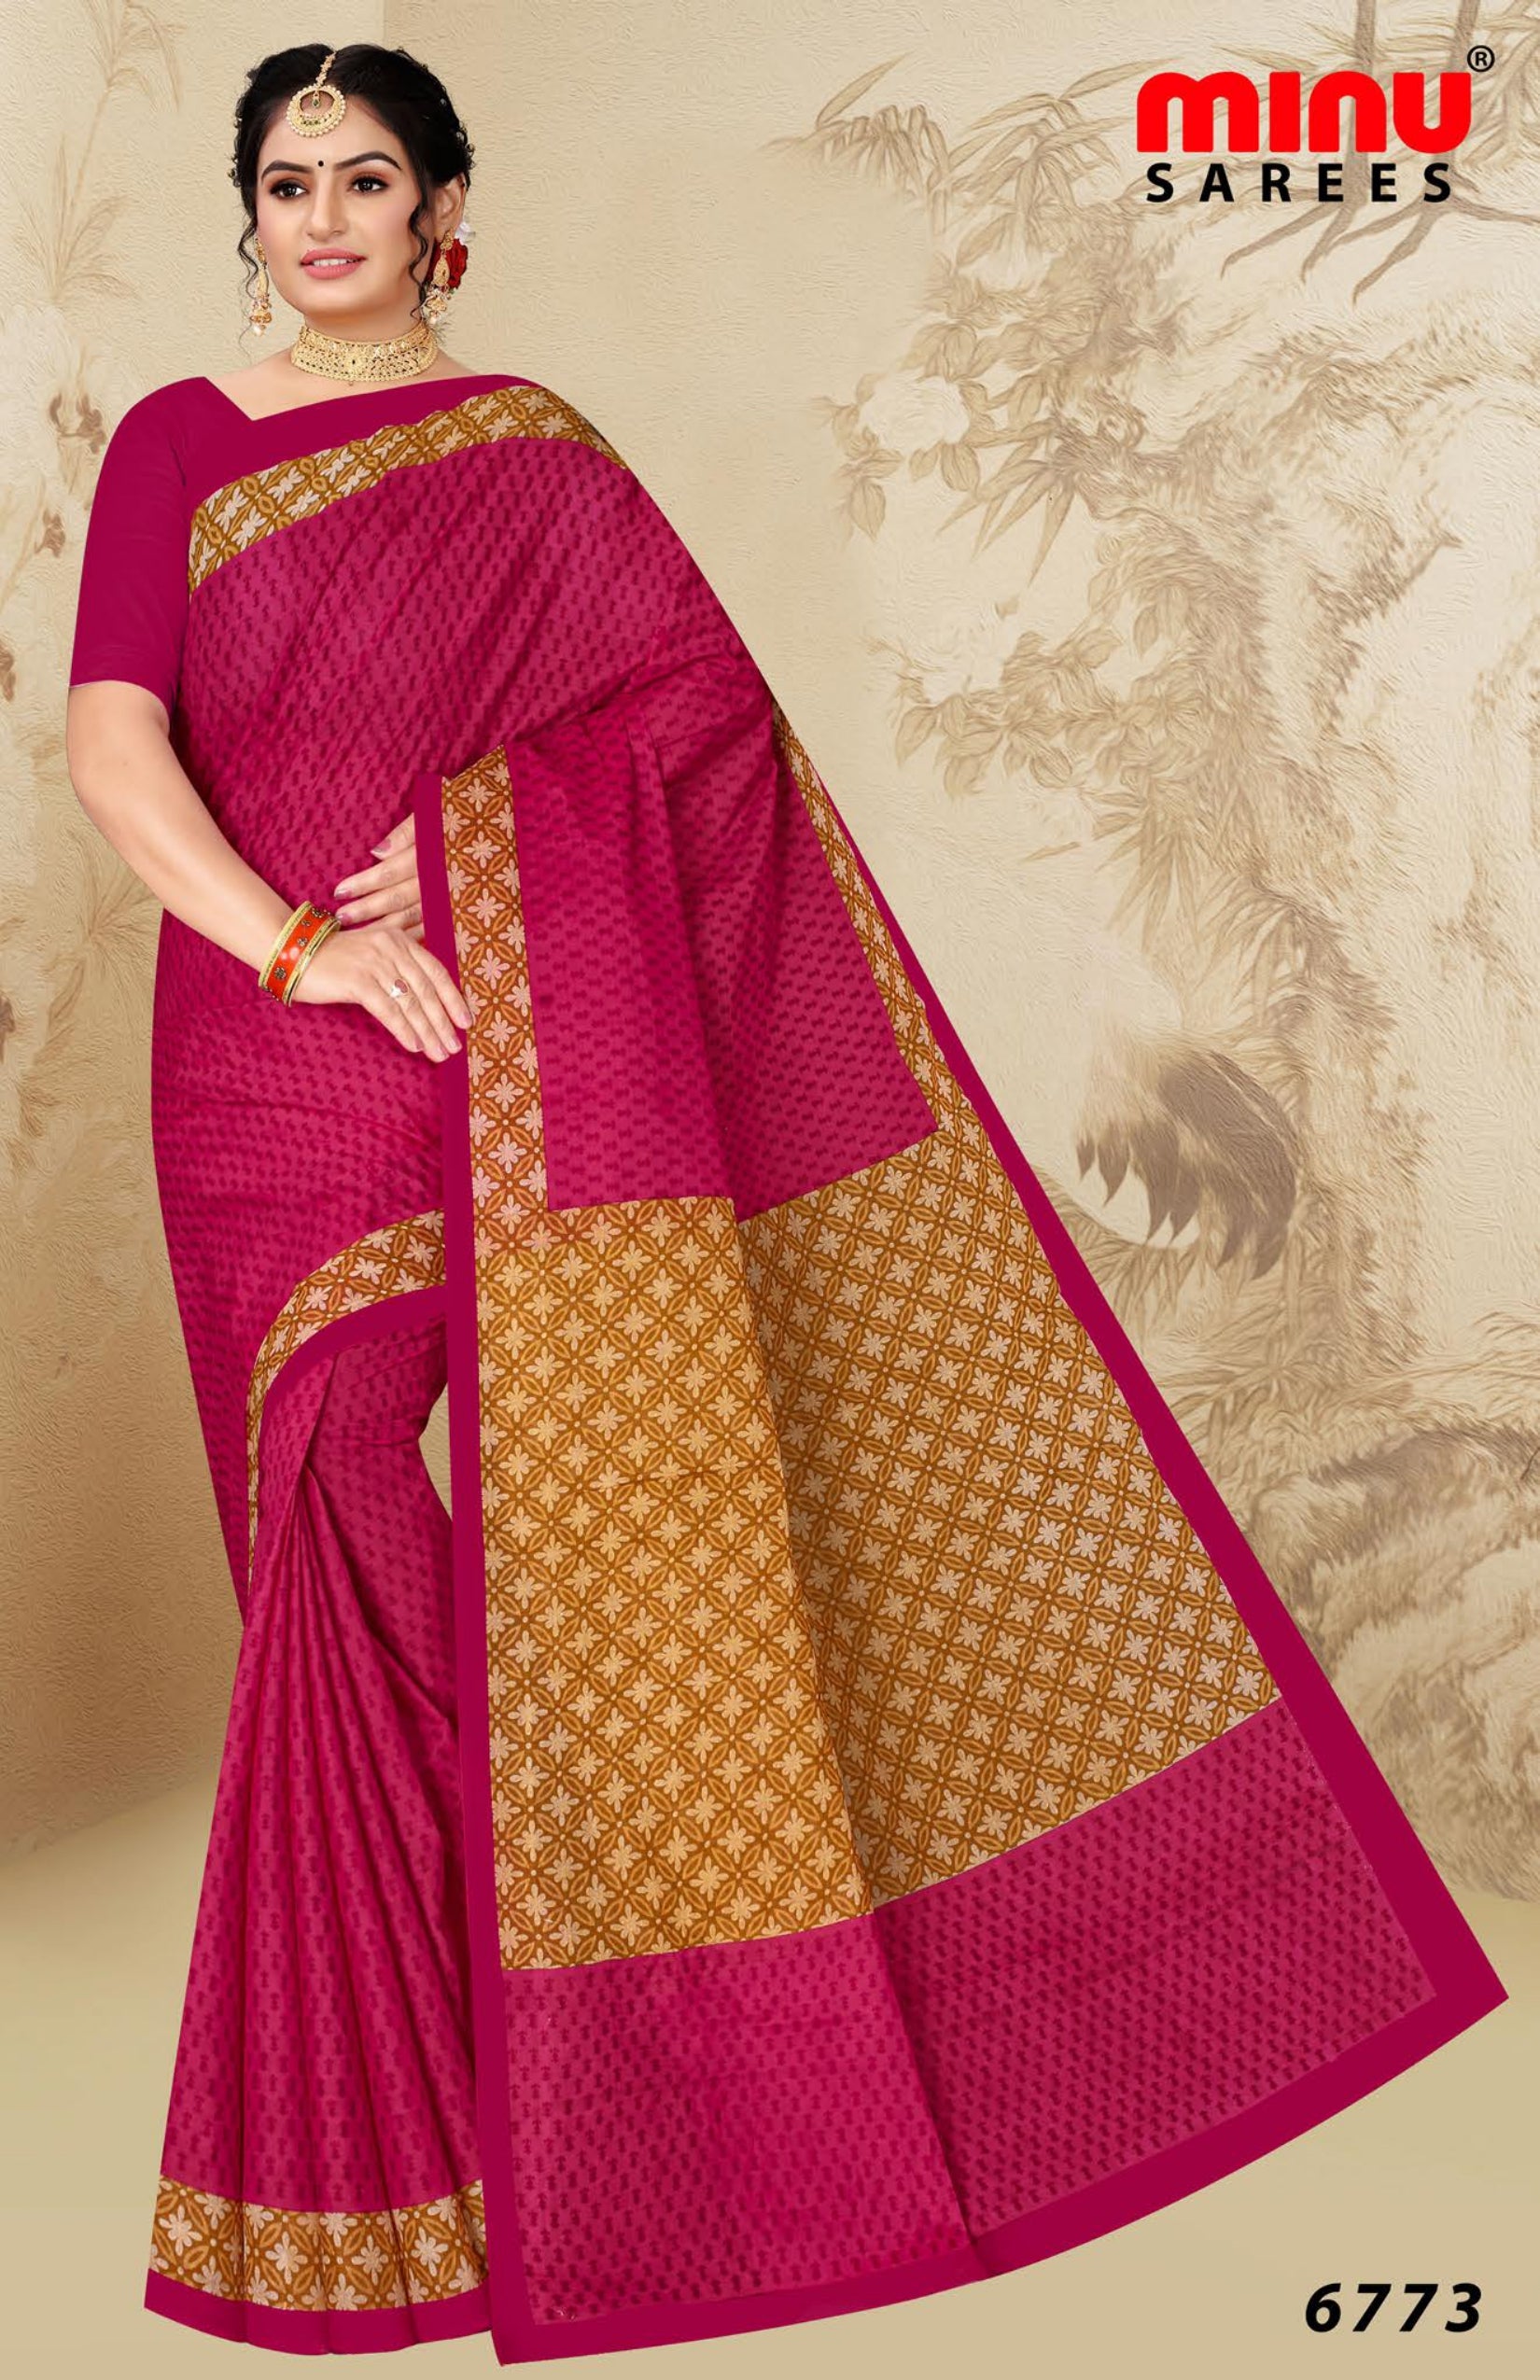 women wearing a pink cotton printed saree 